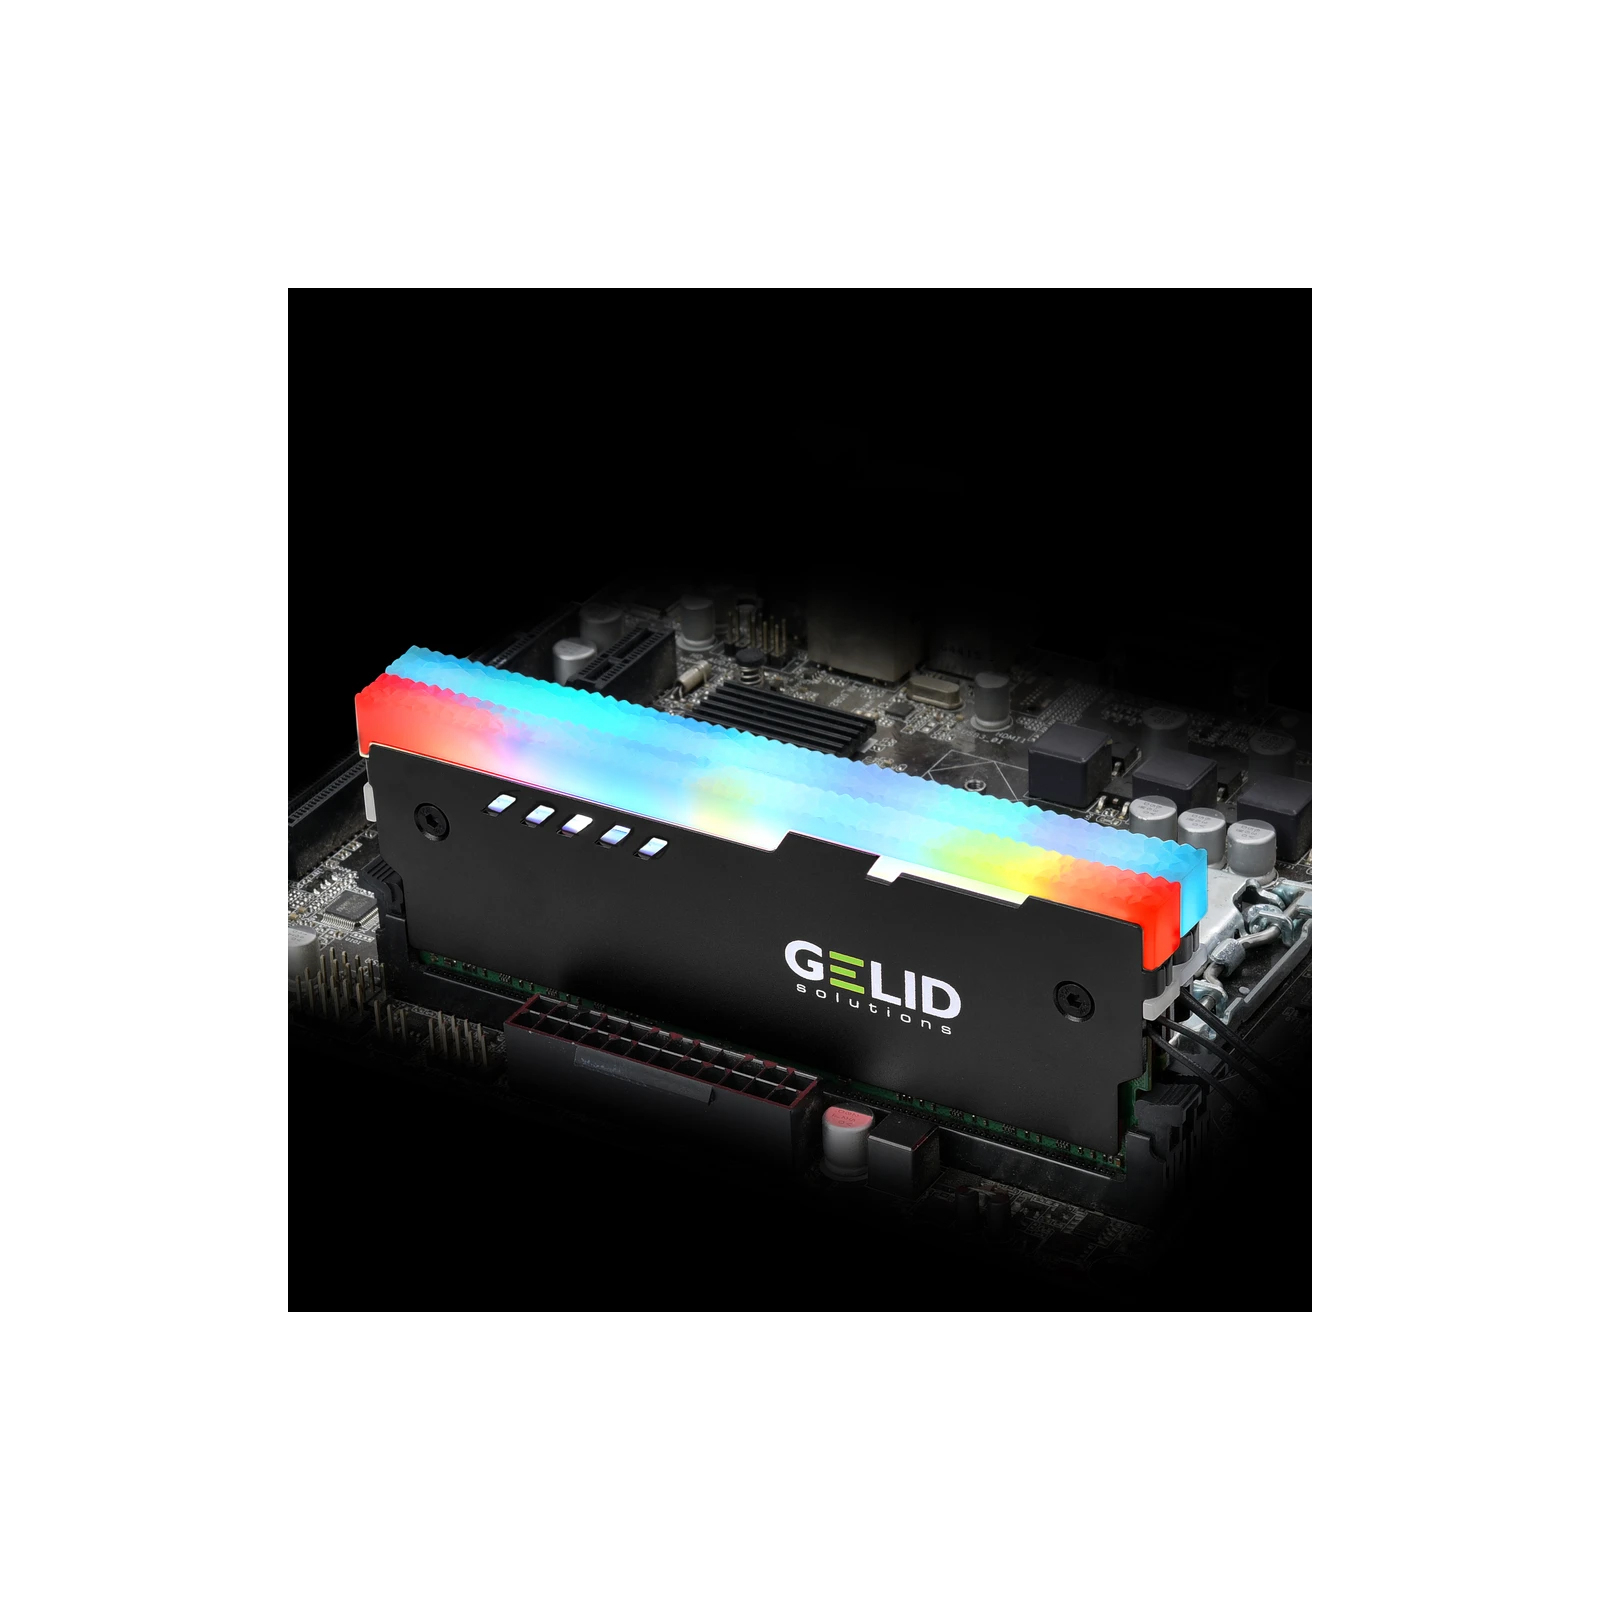 Охлаждение для памяти Gelid Solutions Lumen RGB RAM Memory Cooling Black (GZ-RGB-01) изображение 6